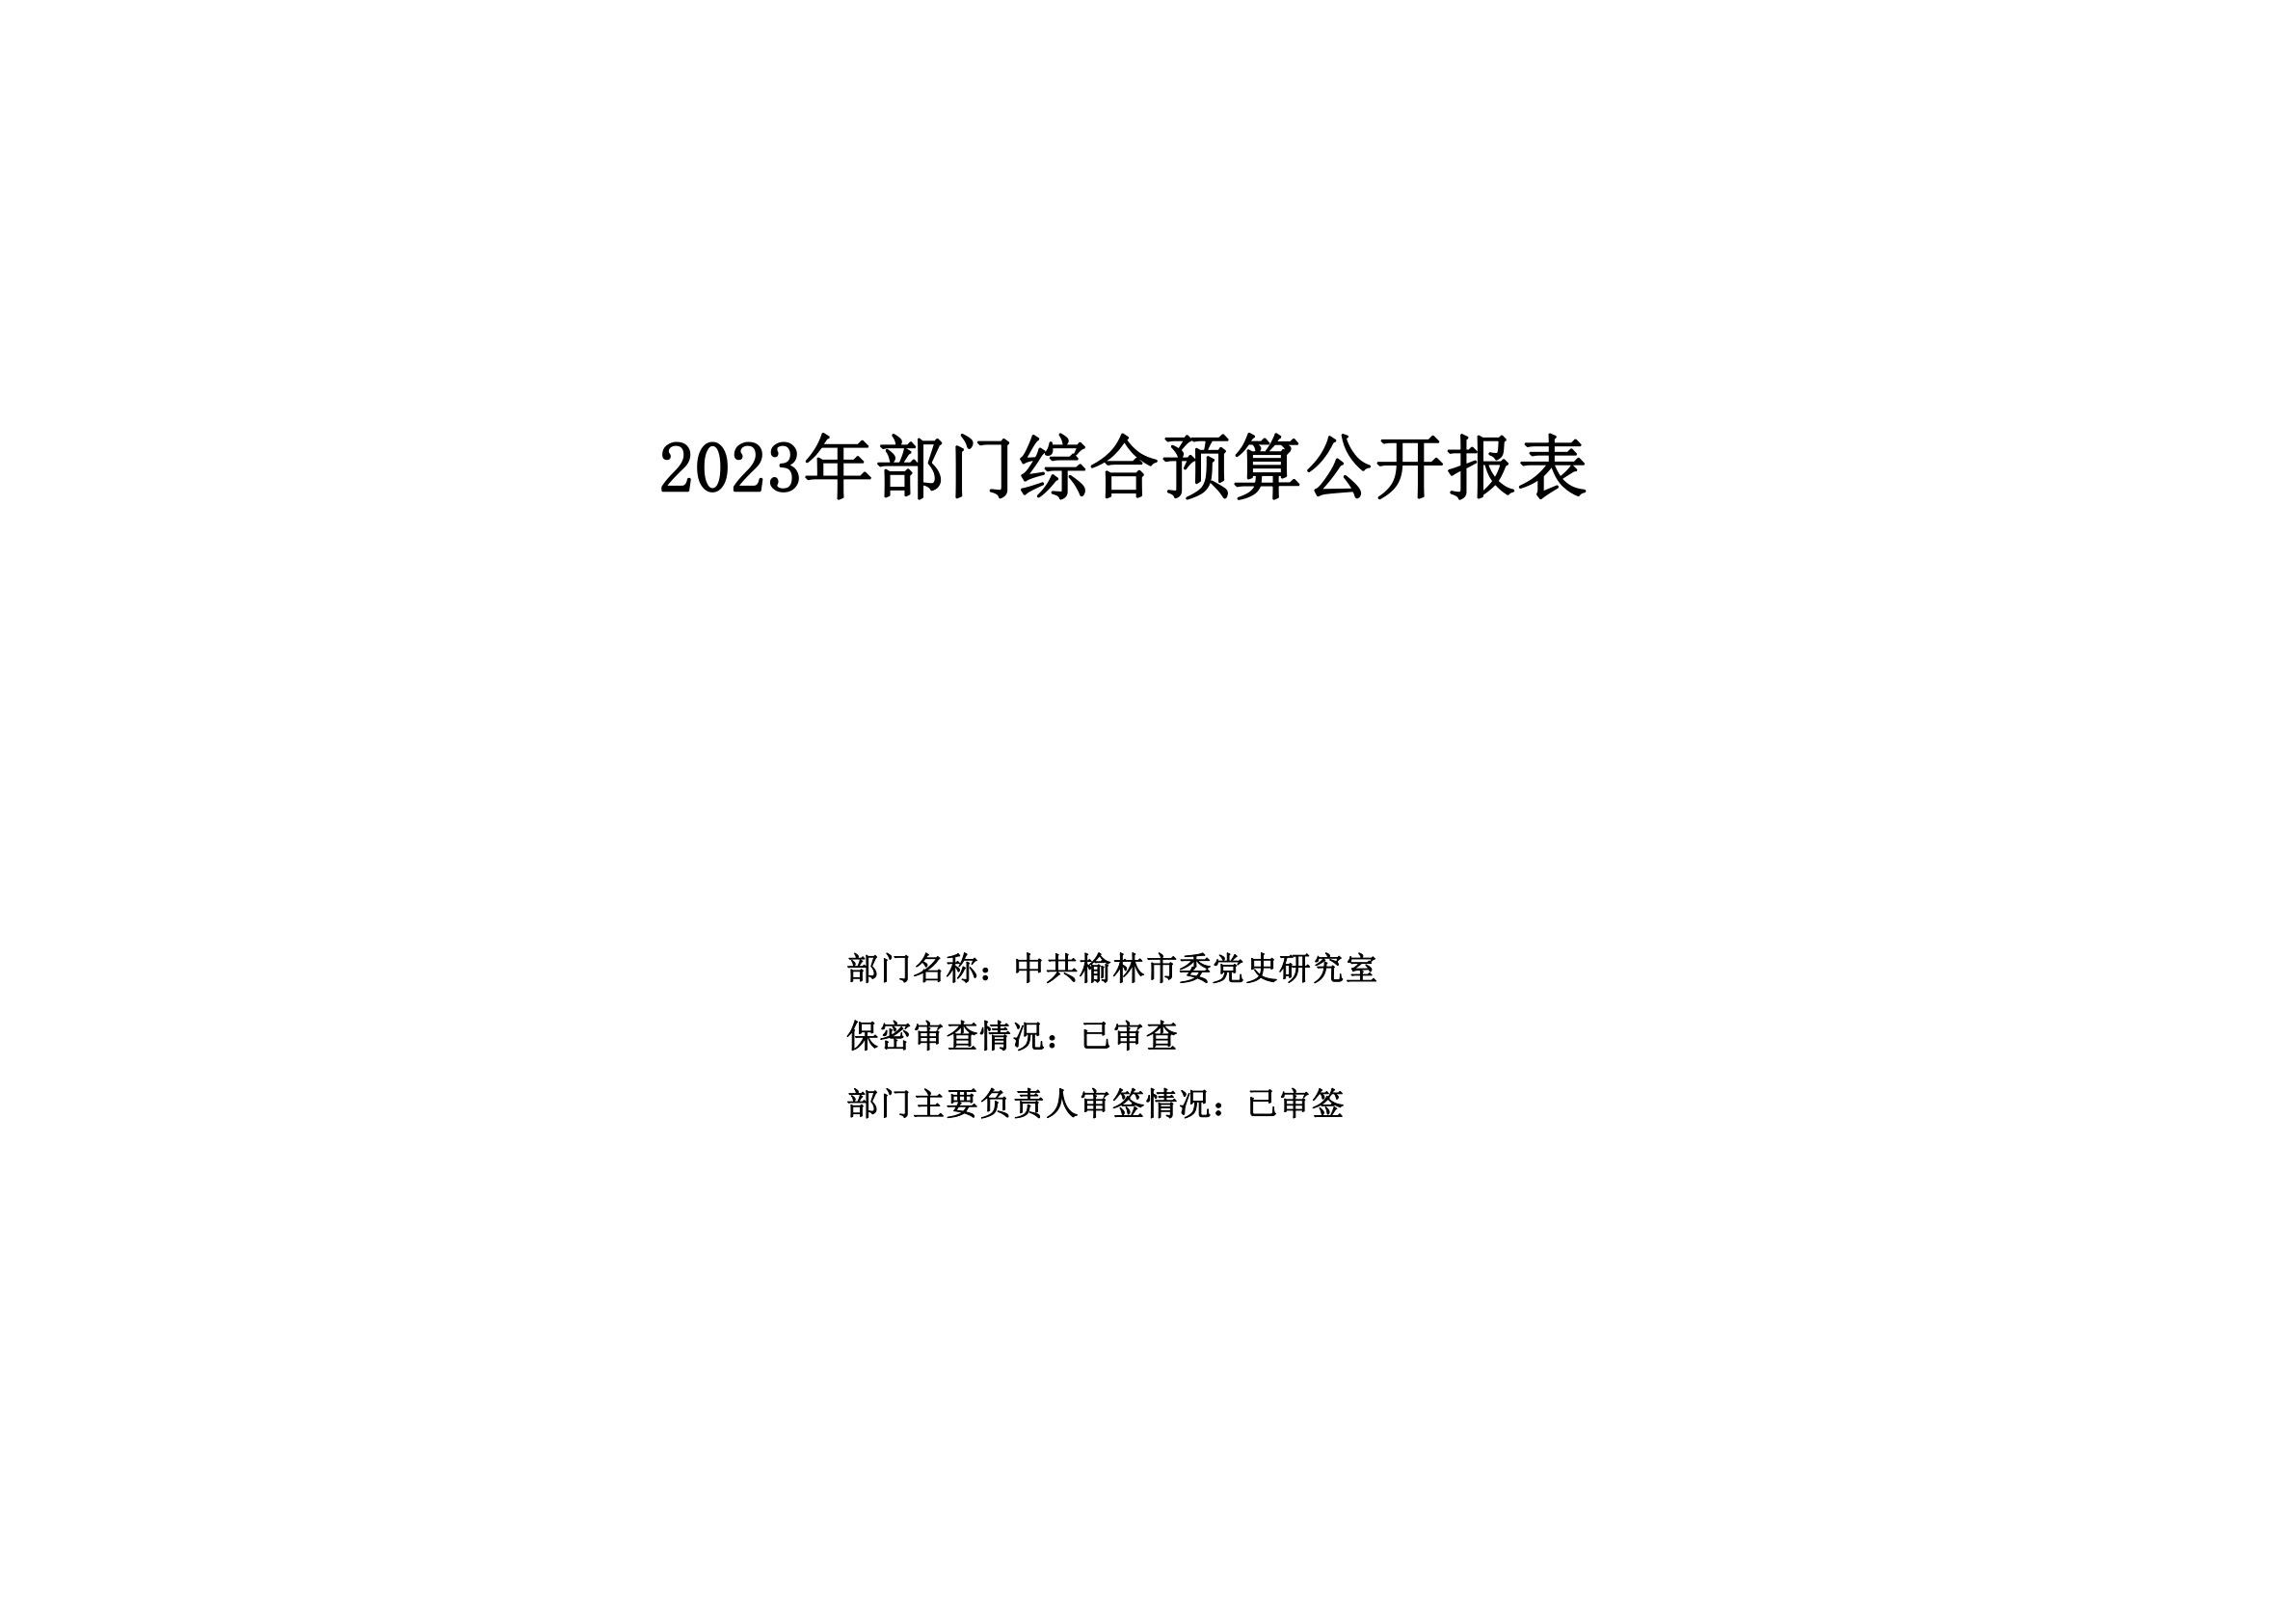 2023年部门预算公开-中共榆林市委党史研究室-最终_11.jpg